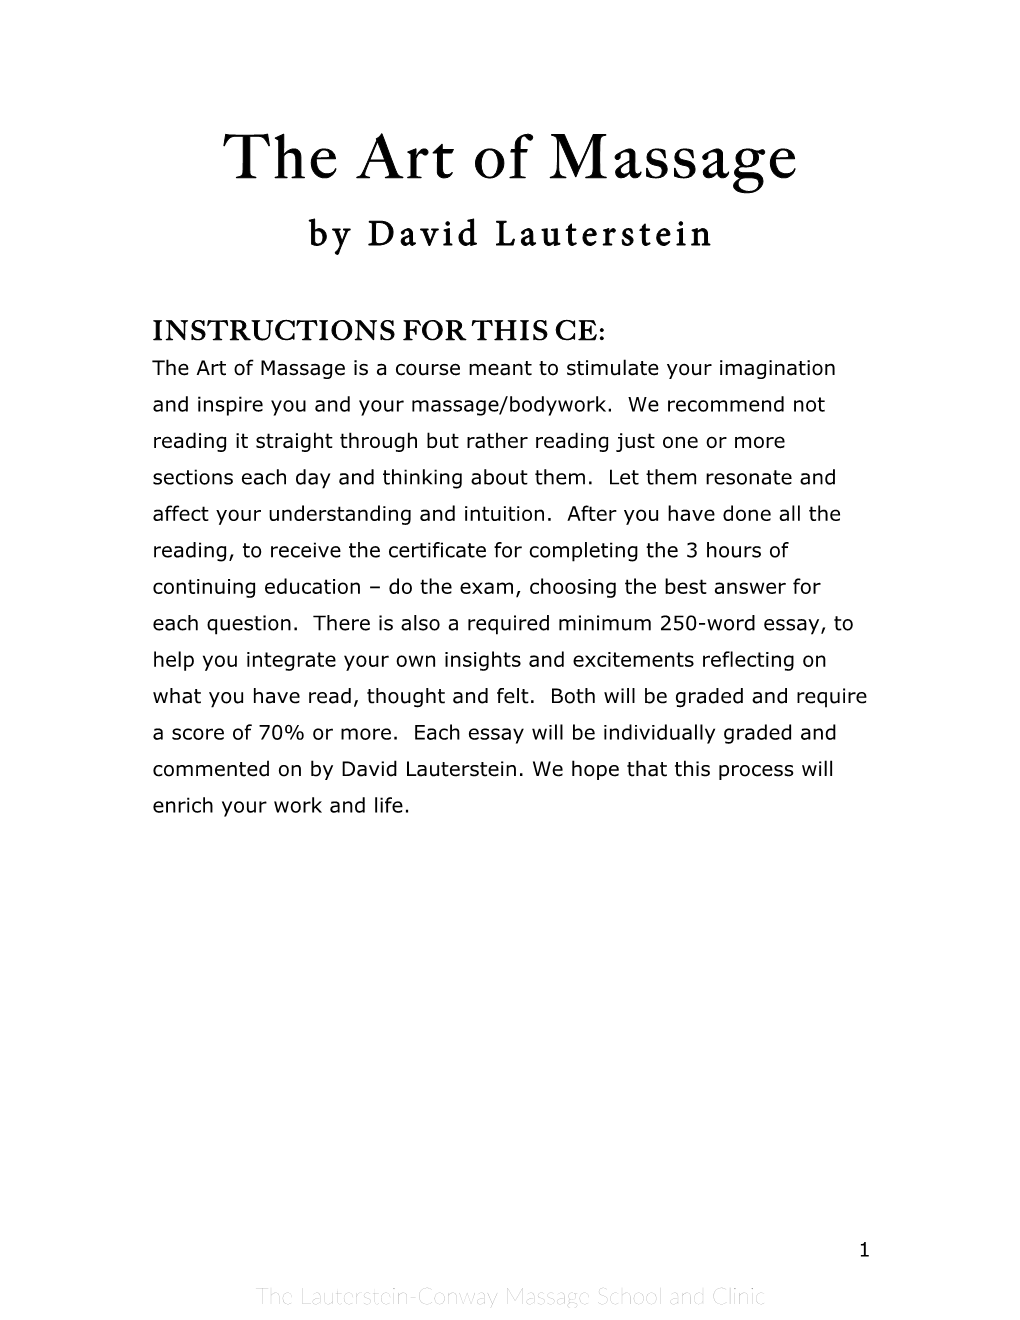 The Art of Massage by David Lauterstein